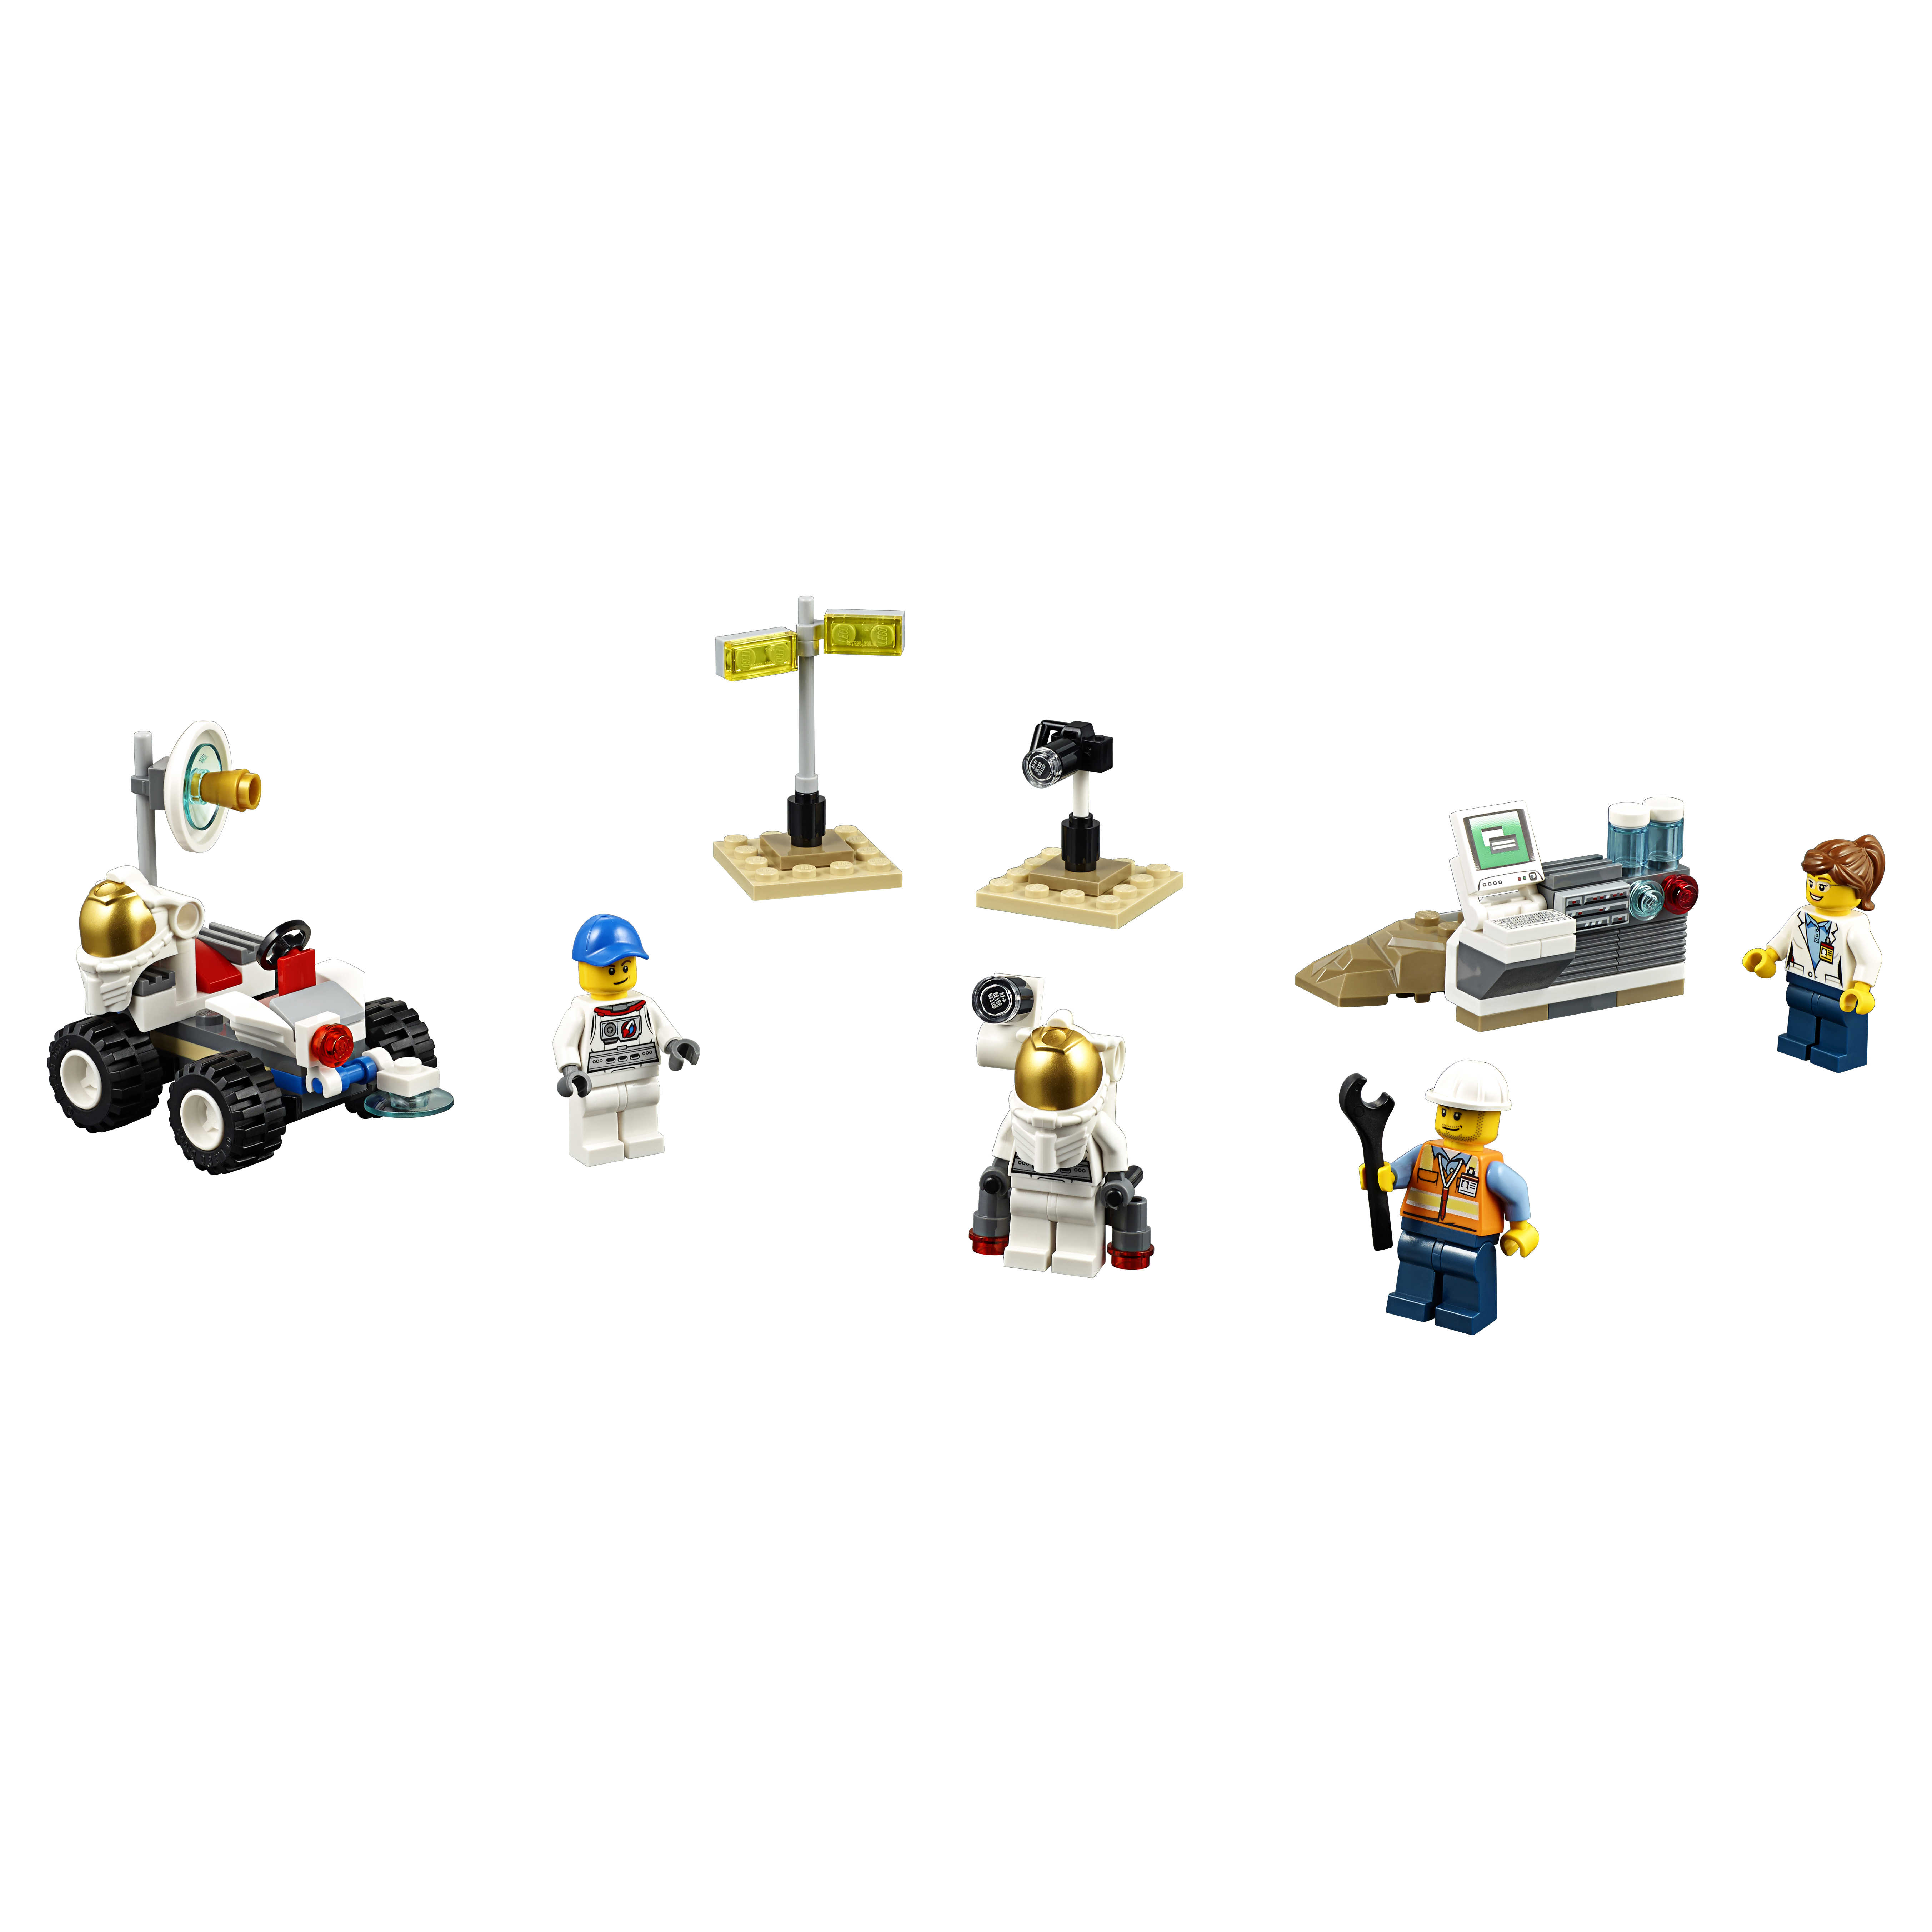 Конструктор LEGO City Space Port Набор для начинающих Космос (60077) конструктор lego legends of chima демо набор